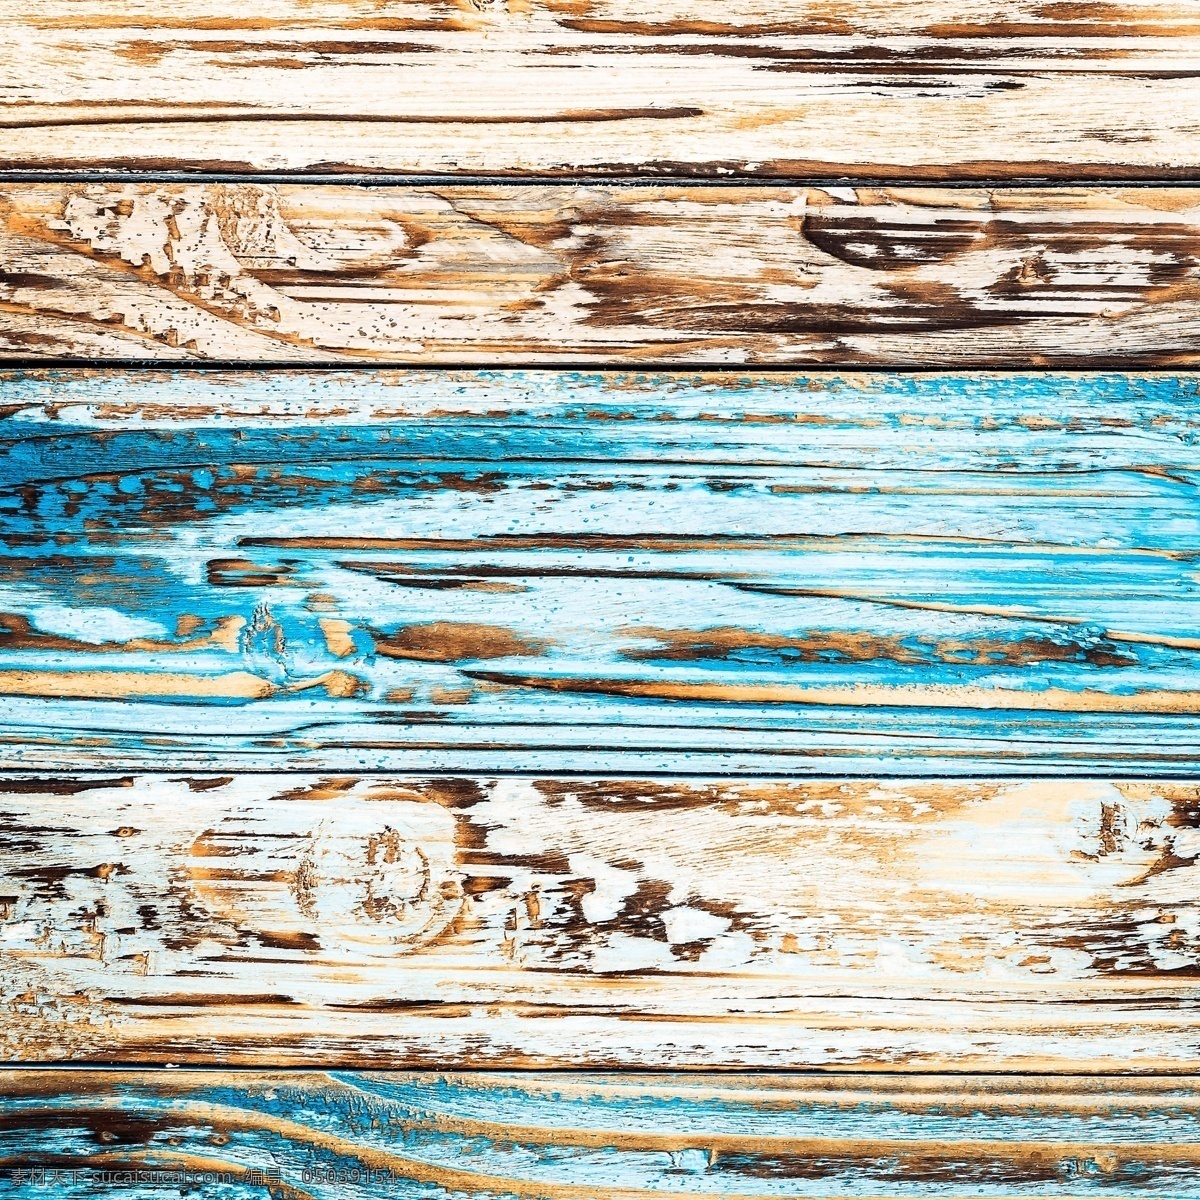 木纹背景 木板背景 纹路 木质 木纹 木板 材质 纹理 木制 高清 tiff 桌面 壁纸 拍摄 摆拍 高清摄影 木板摄影 木纹摄影 生物世界 树木树叶